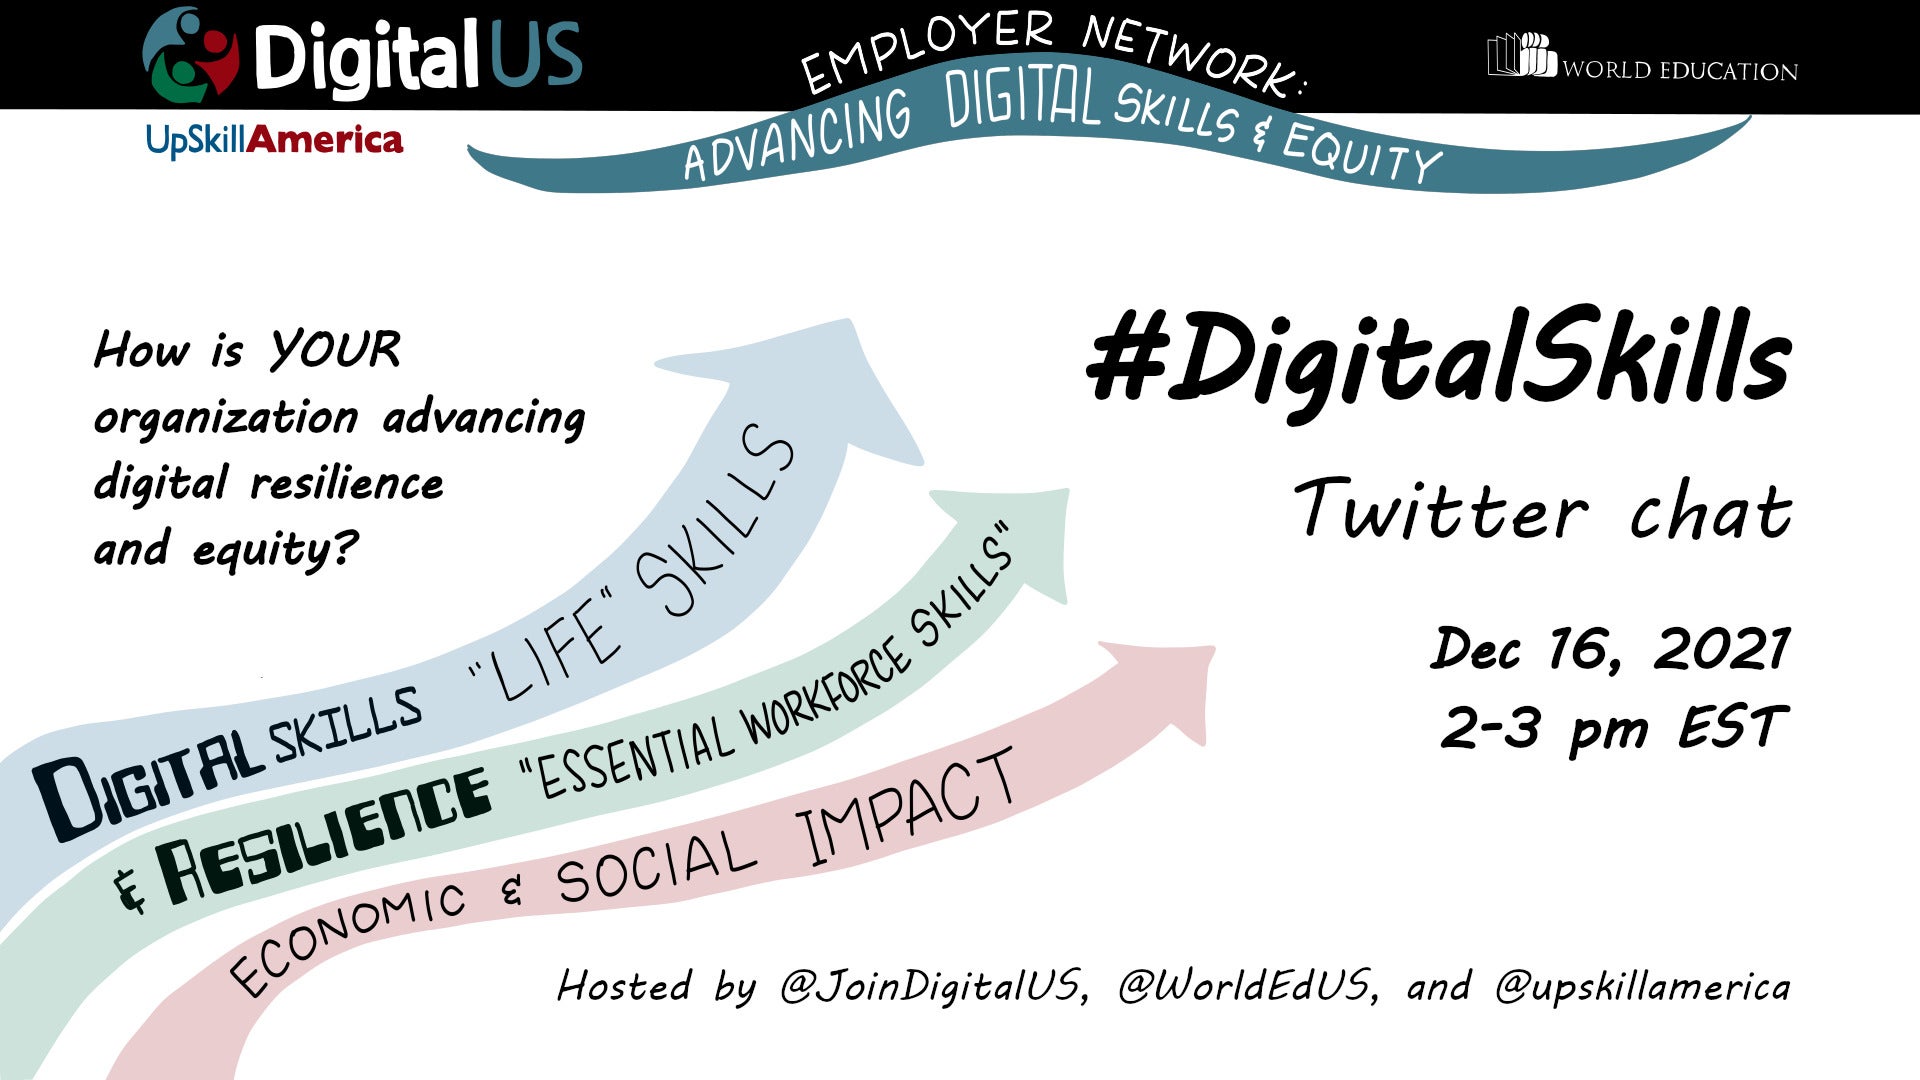 Dec 16: #DigitalSkills Twitter Chat